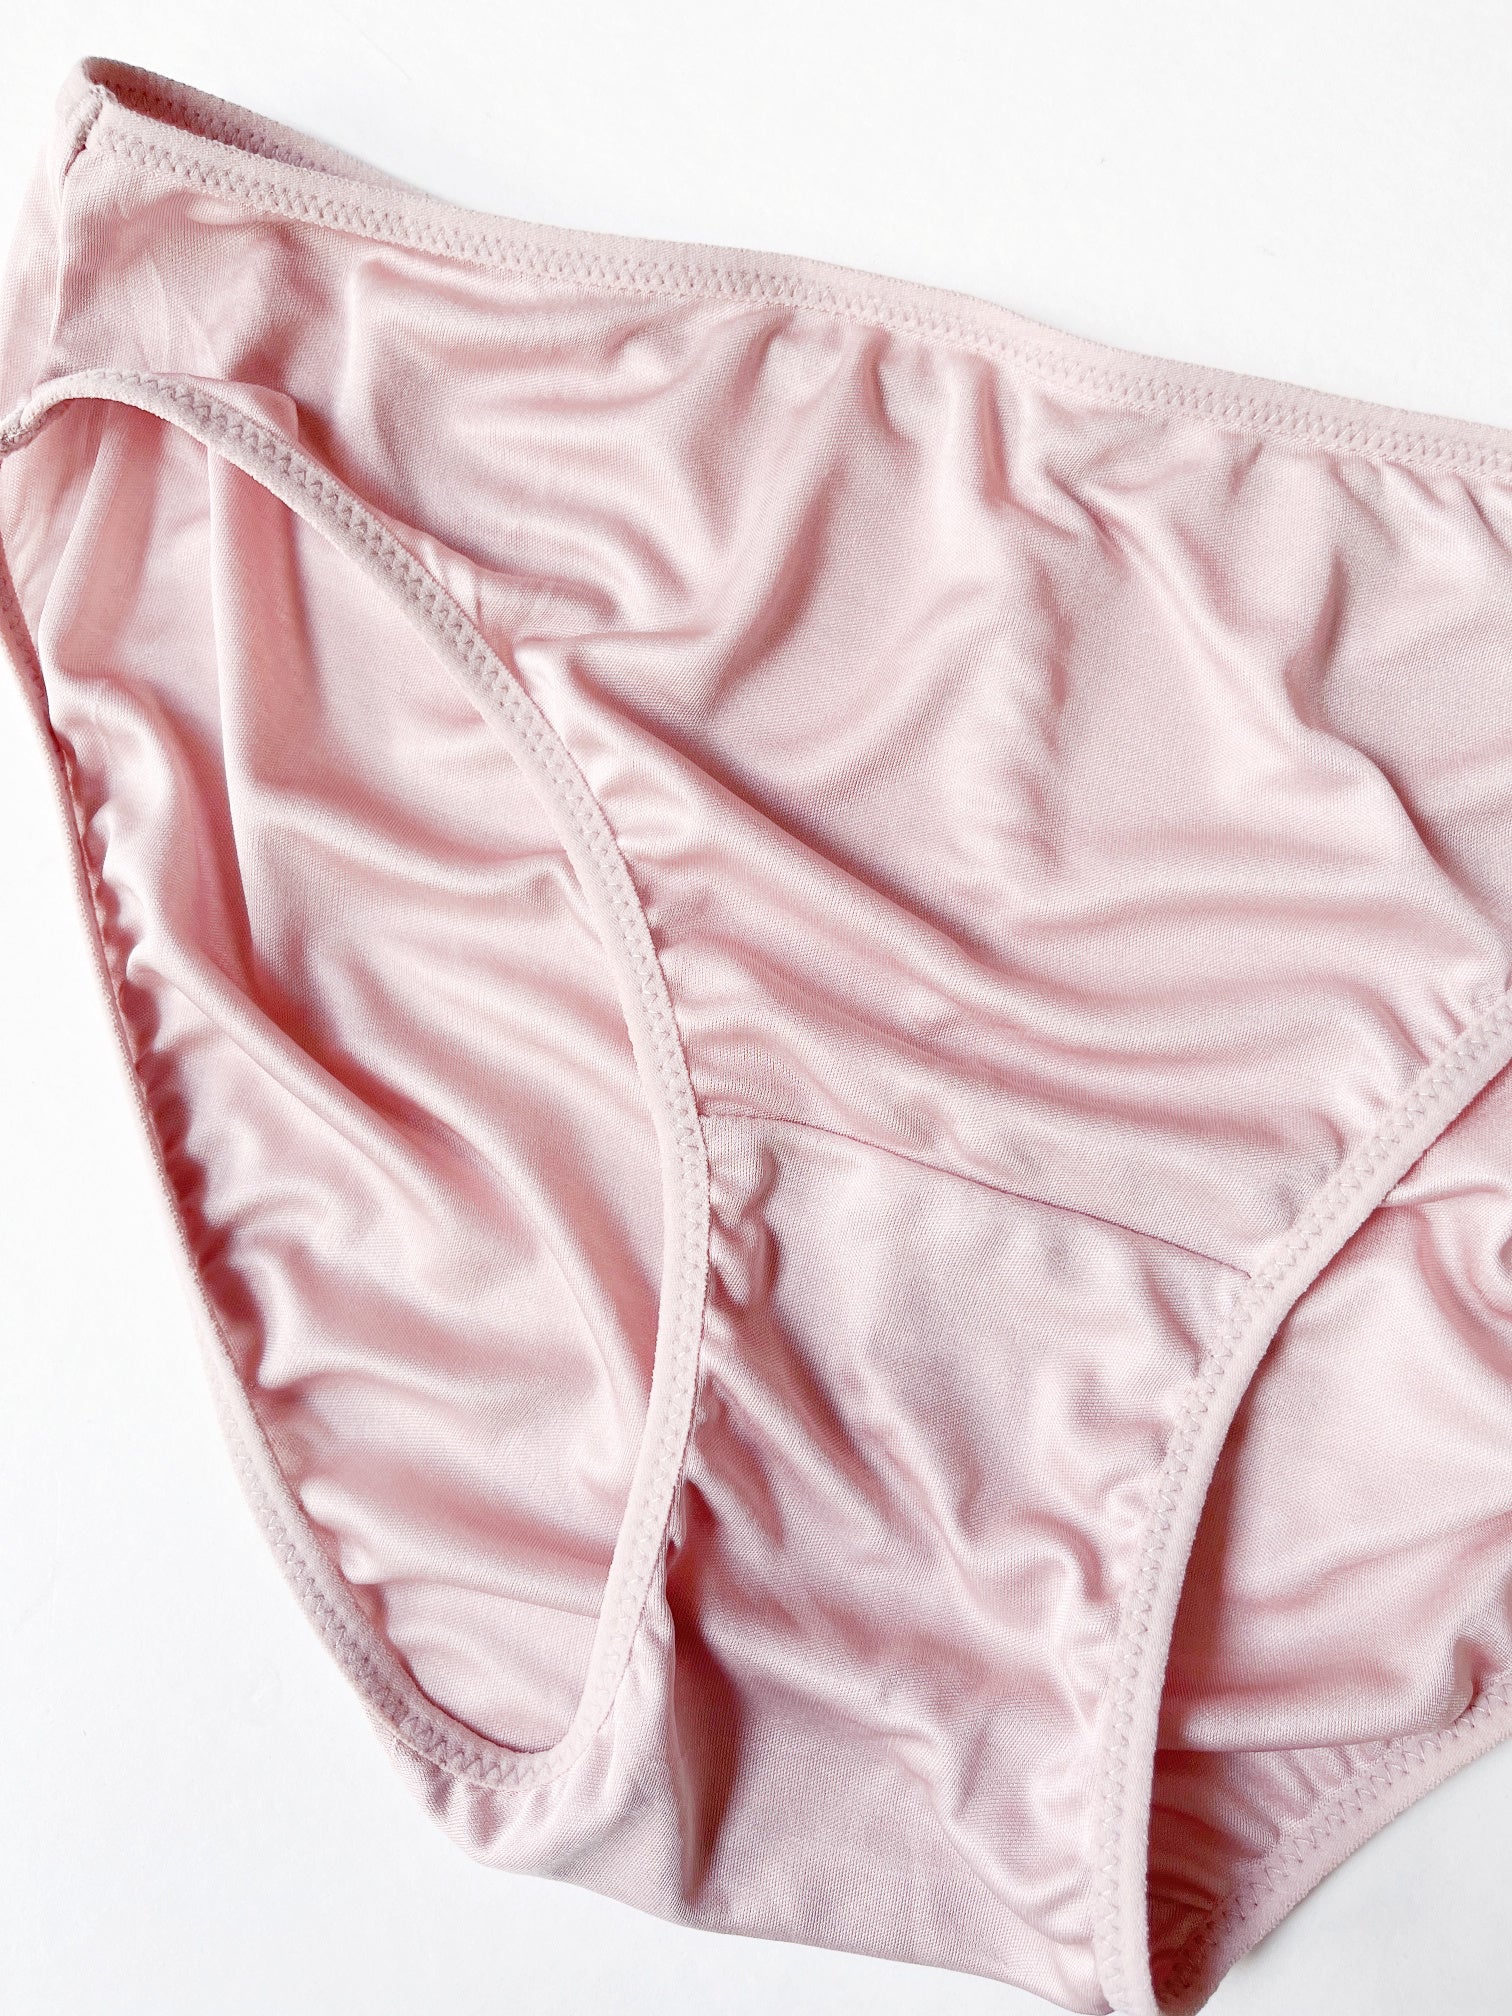 Womens 100% Silk Panties Briefs Hipsters Underwear Nudies Shiny